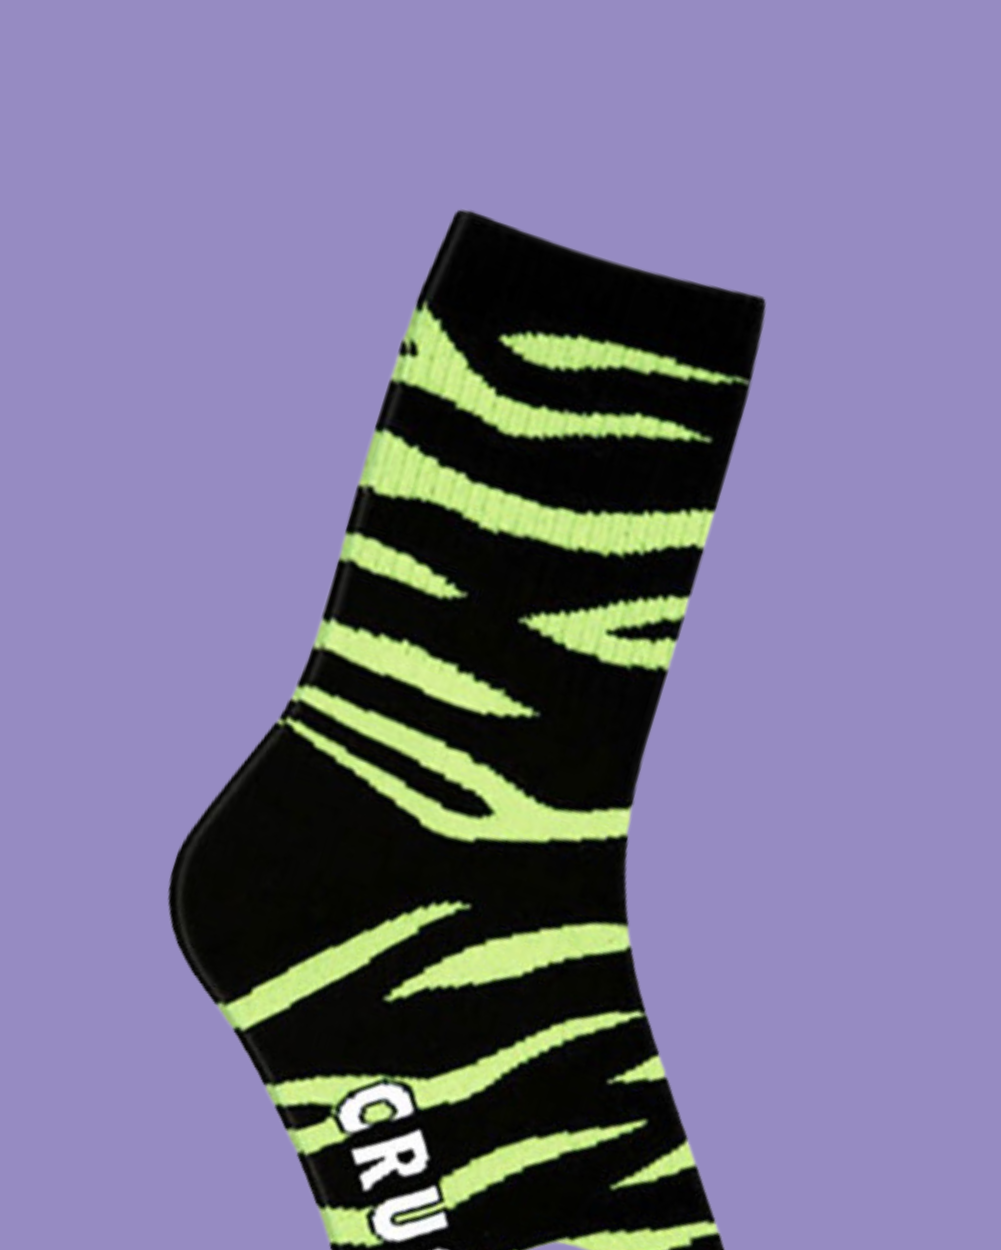 Crush Socks- Neon Zebra - Lunautics